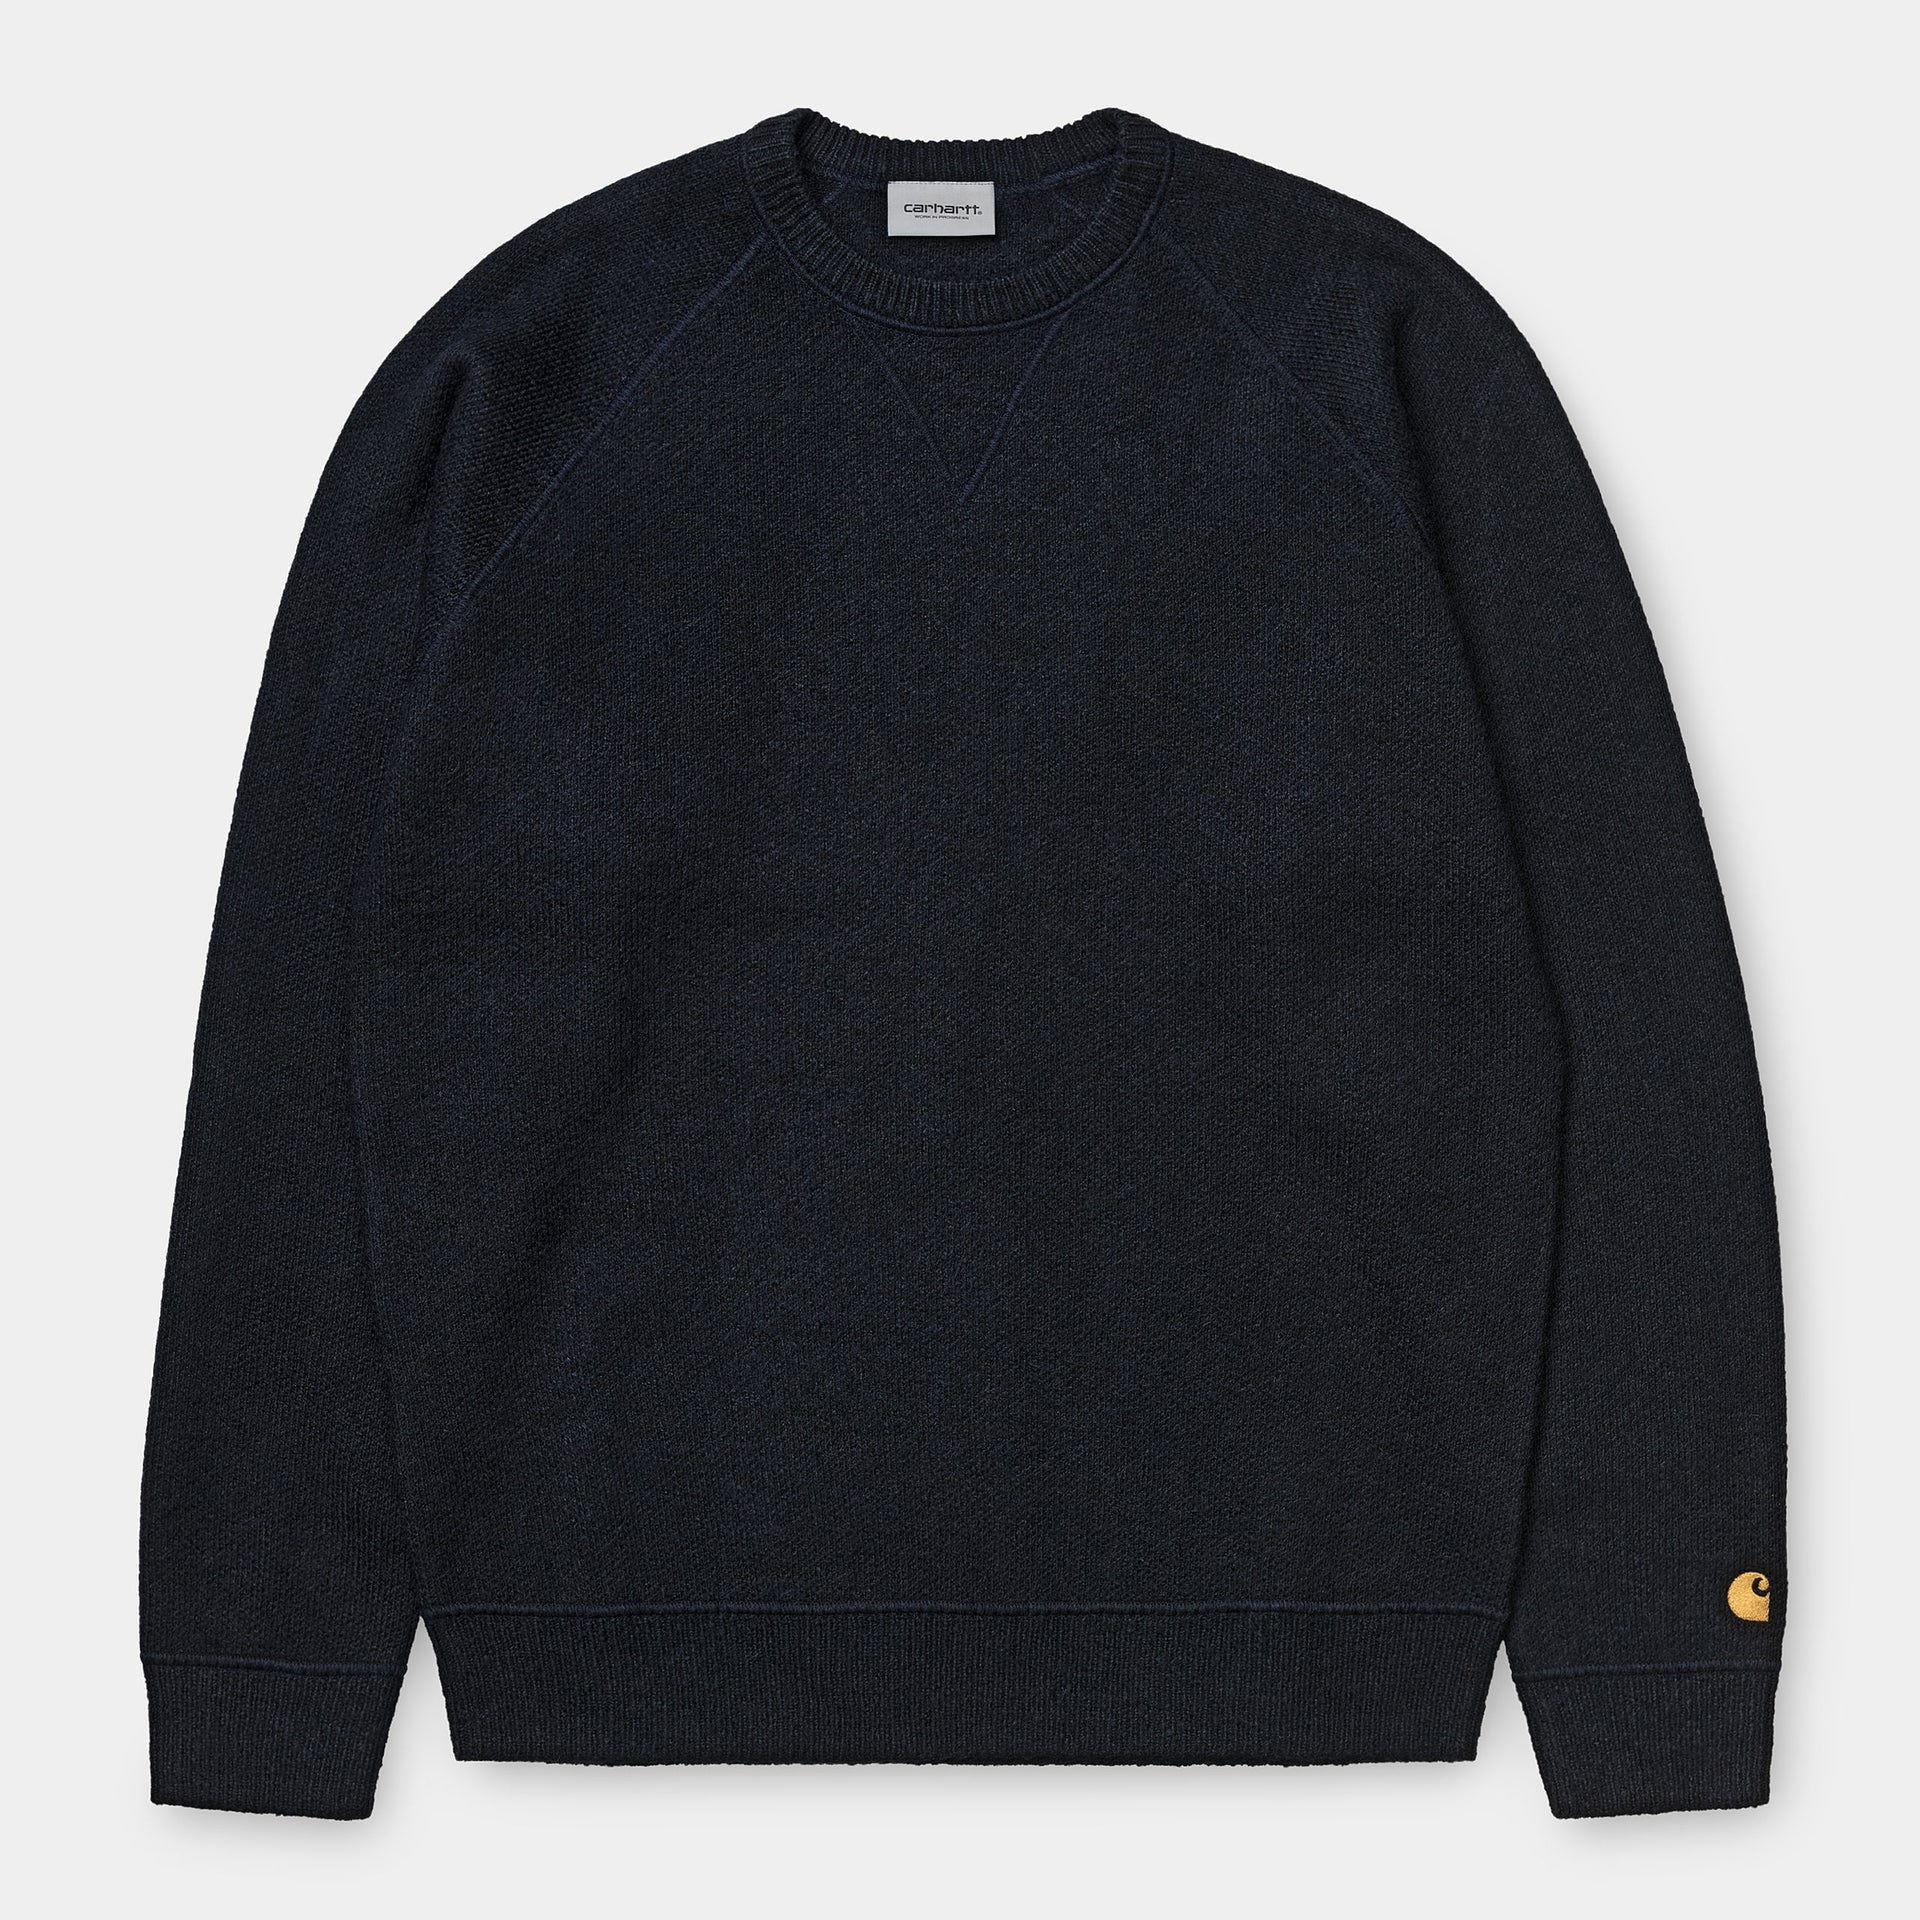 Chase Sweater Dark Navy